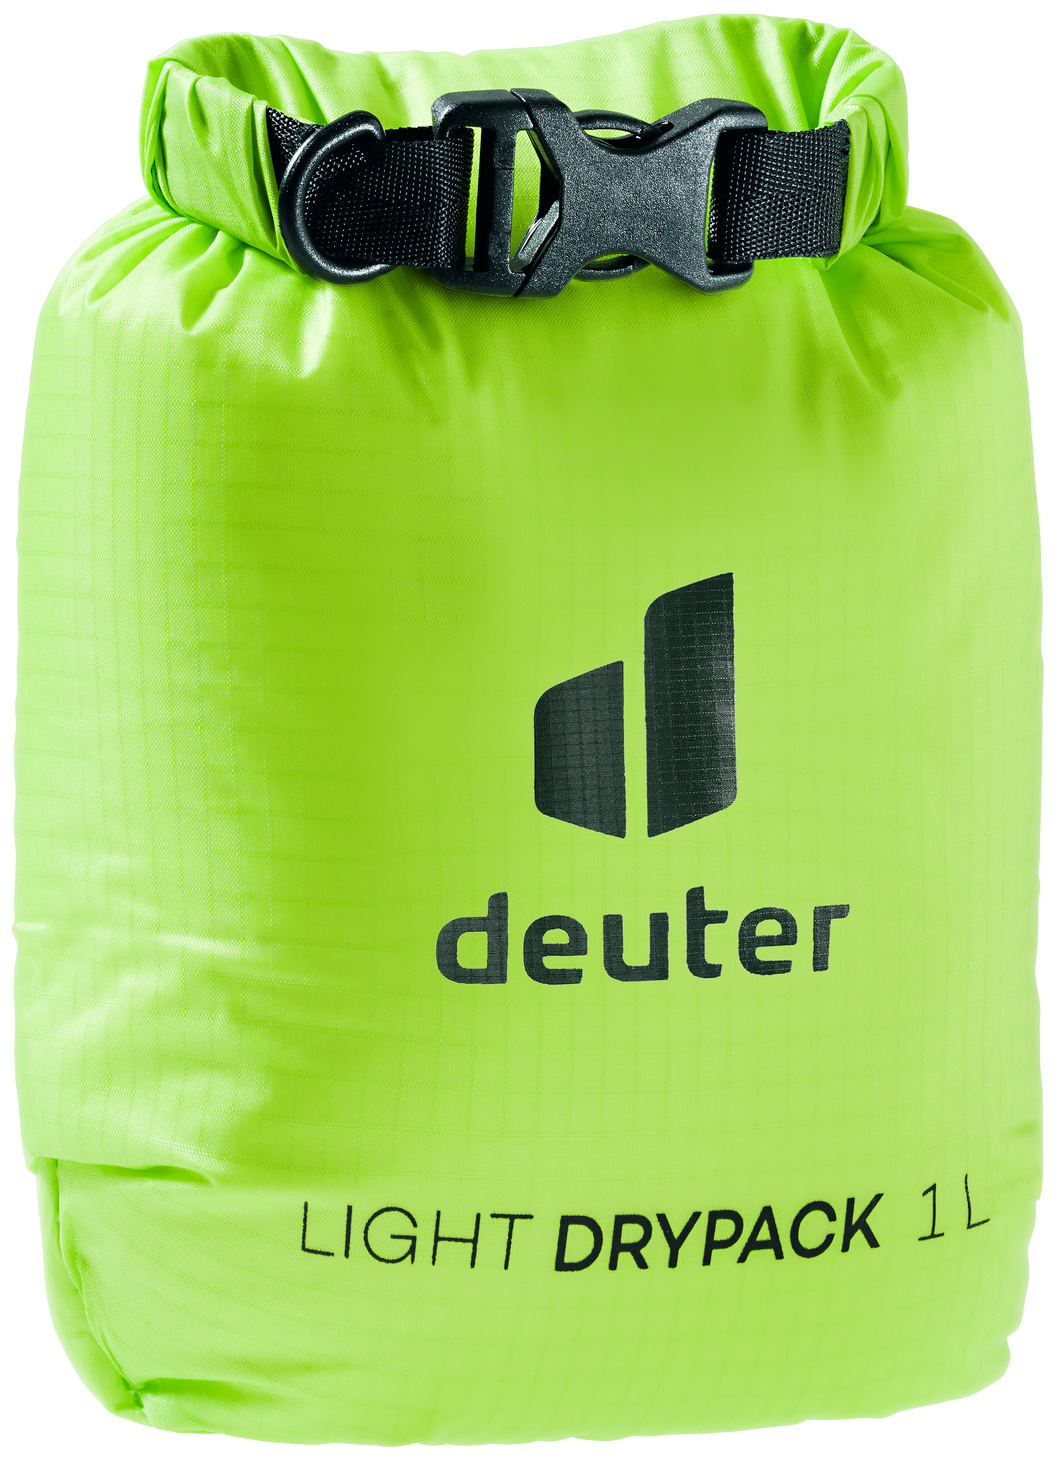 Light Drypack 1L